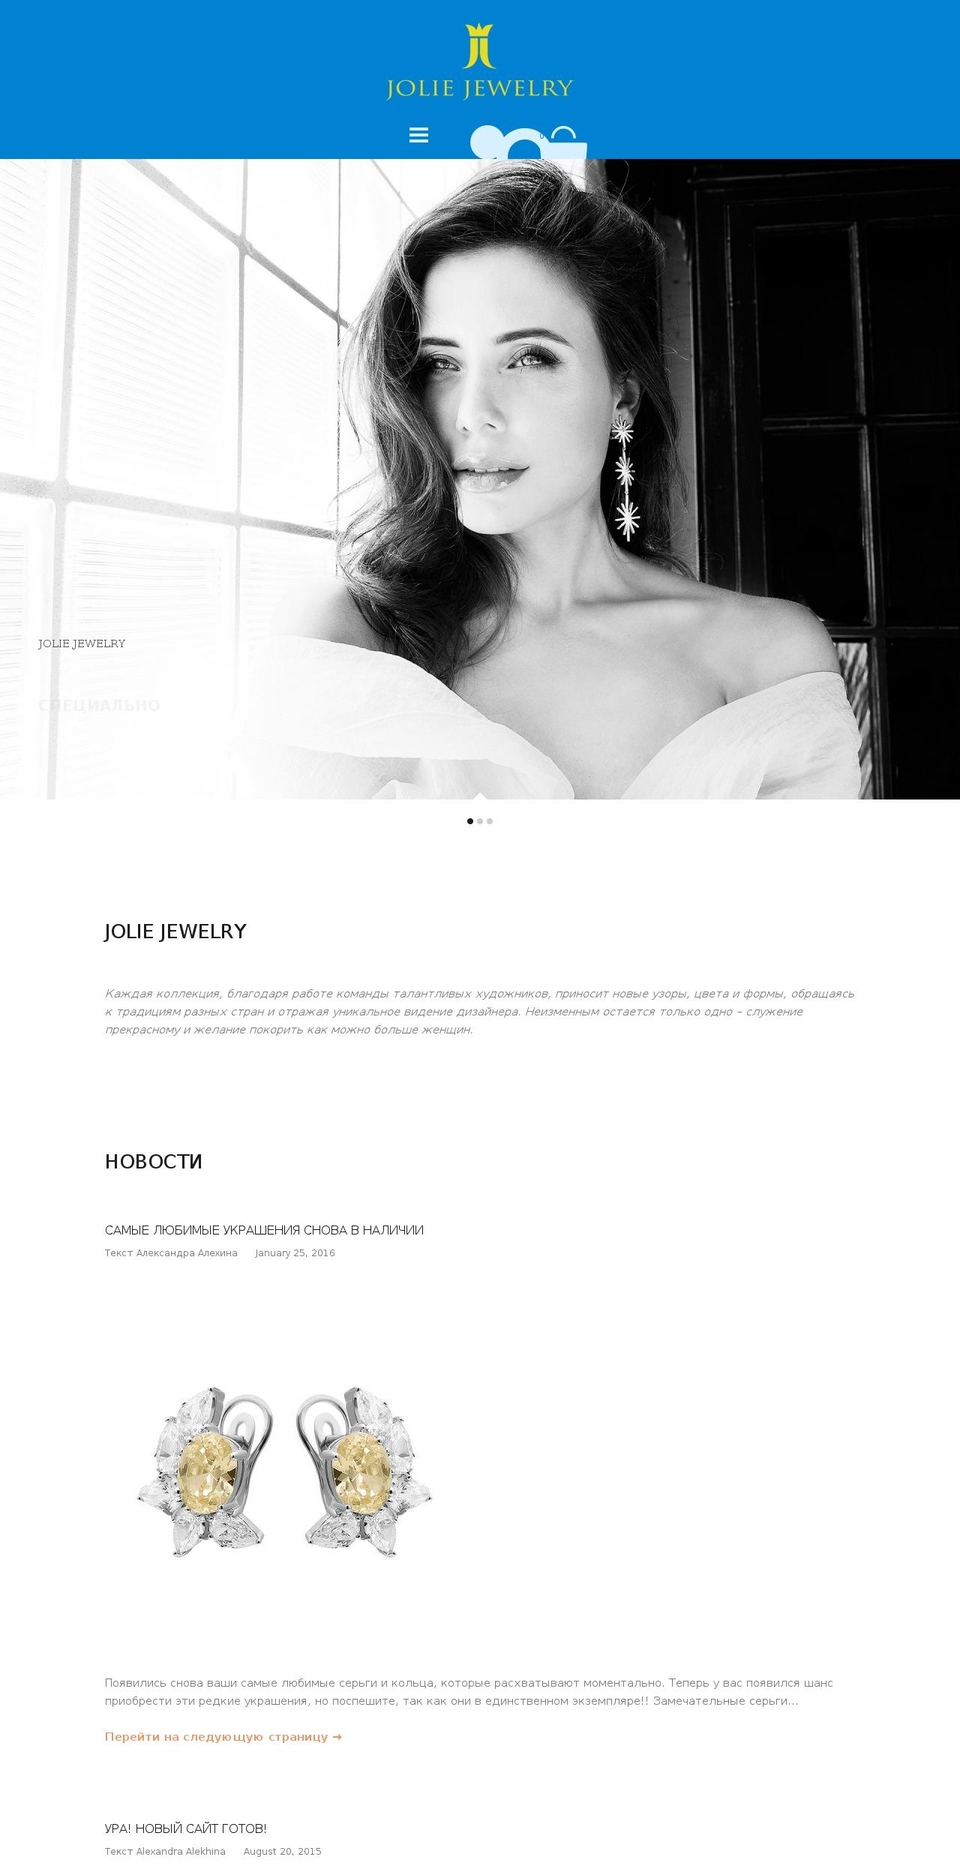 joliejewelry-co-kingdom-1 Shopify theme site example jjco.ru